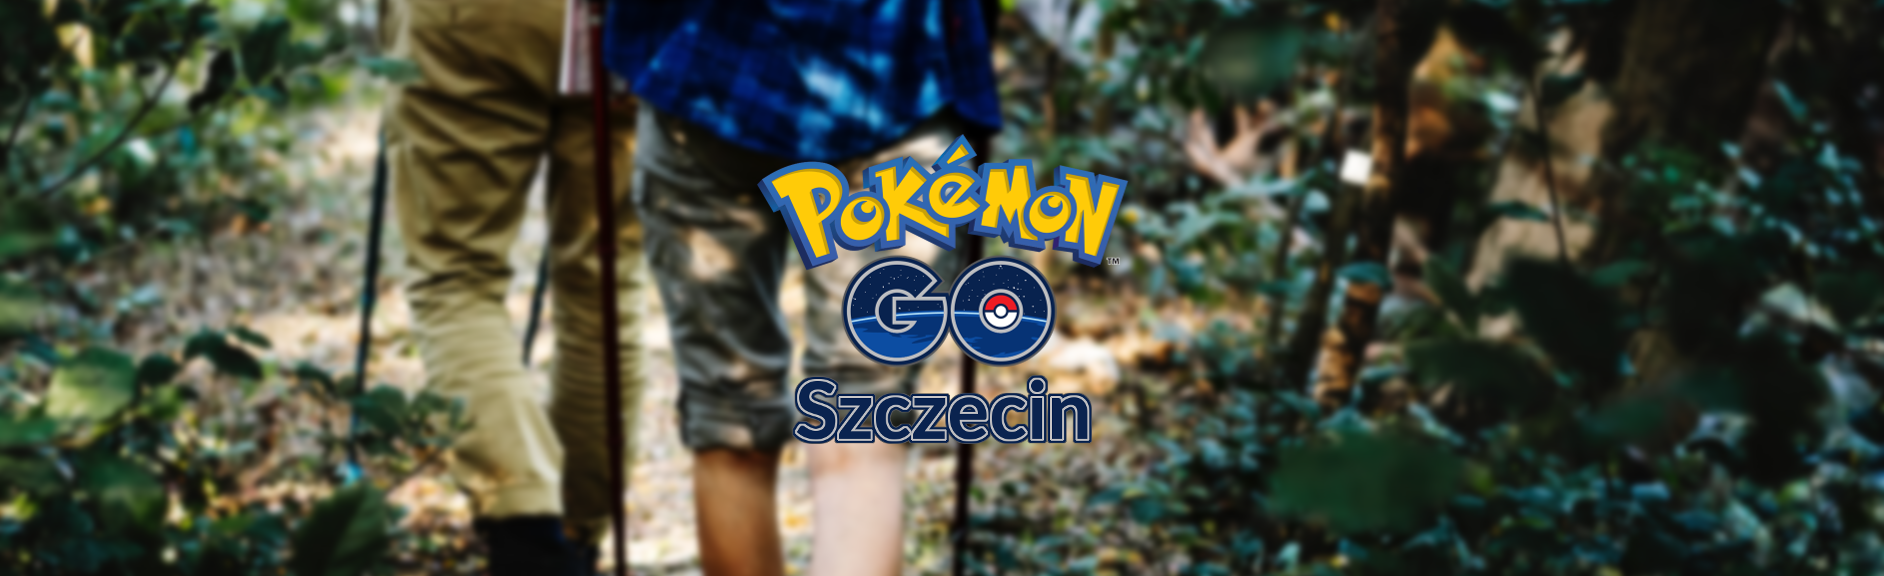 Pokémon GO Szczecin